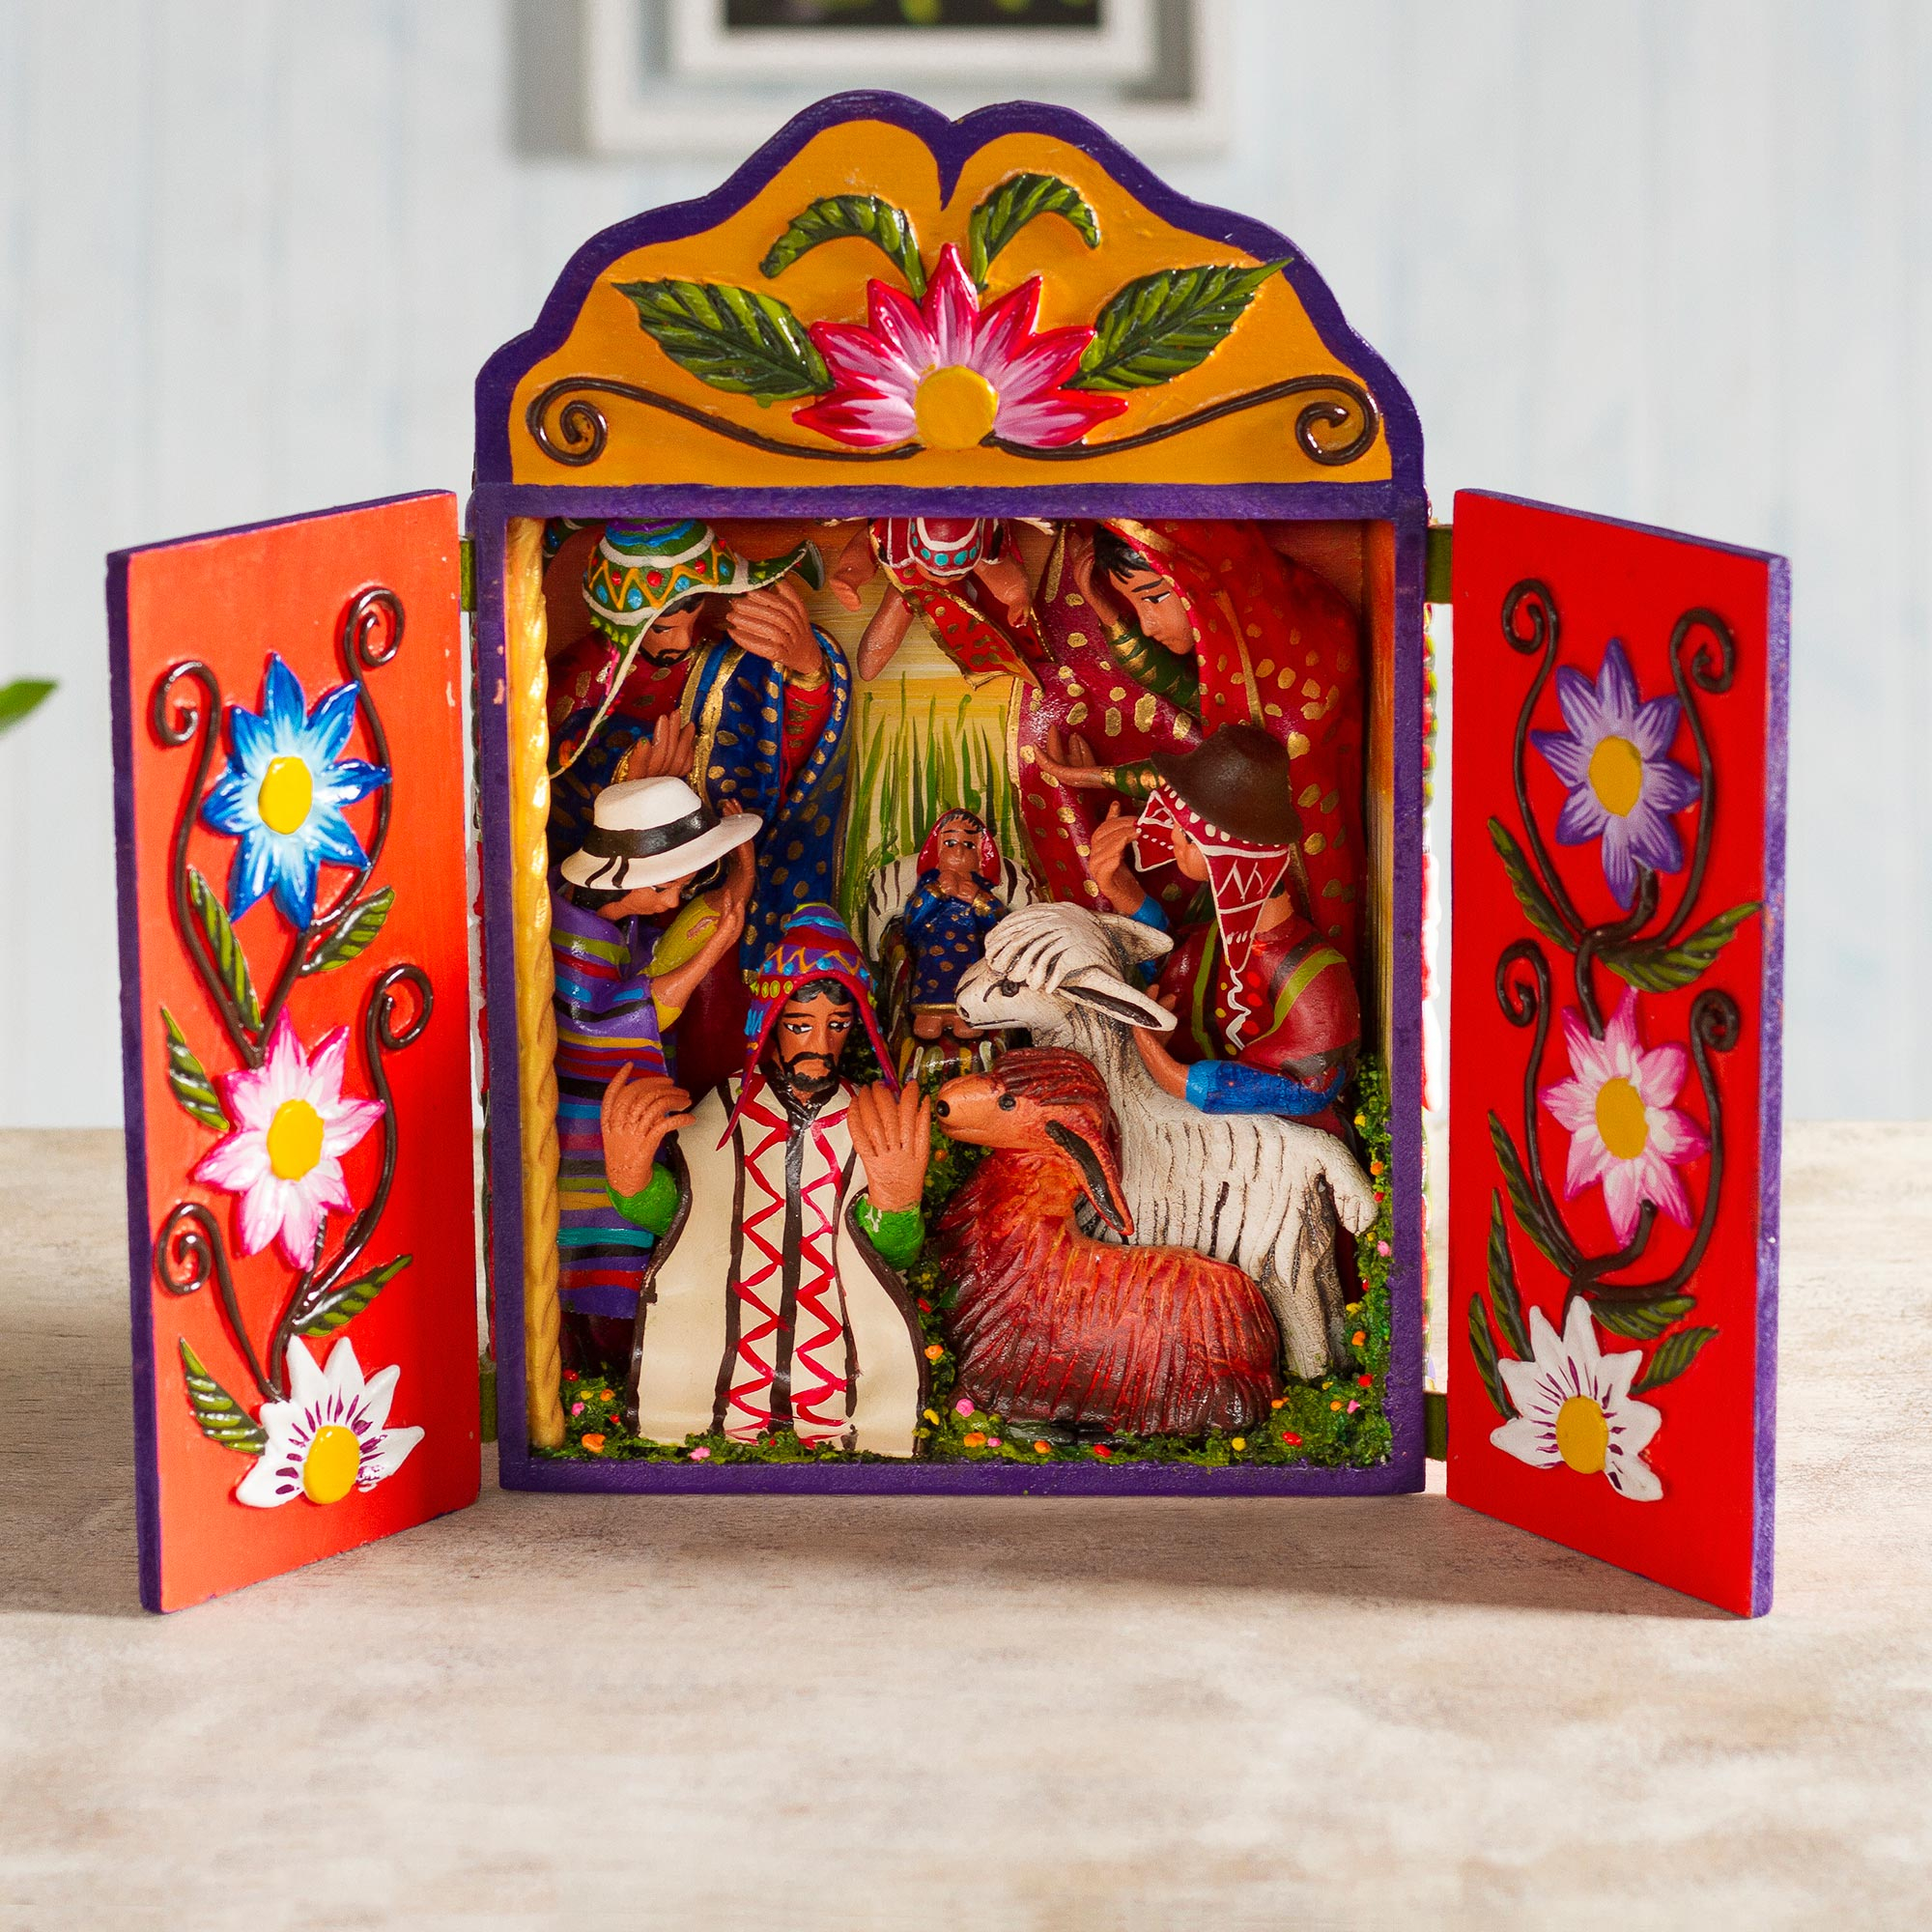 Belén de Navidad Multicolor Cerámica Madera (20 x 14,5 x 8 cm)